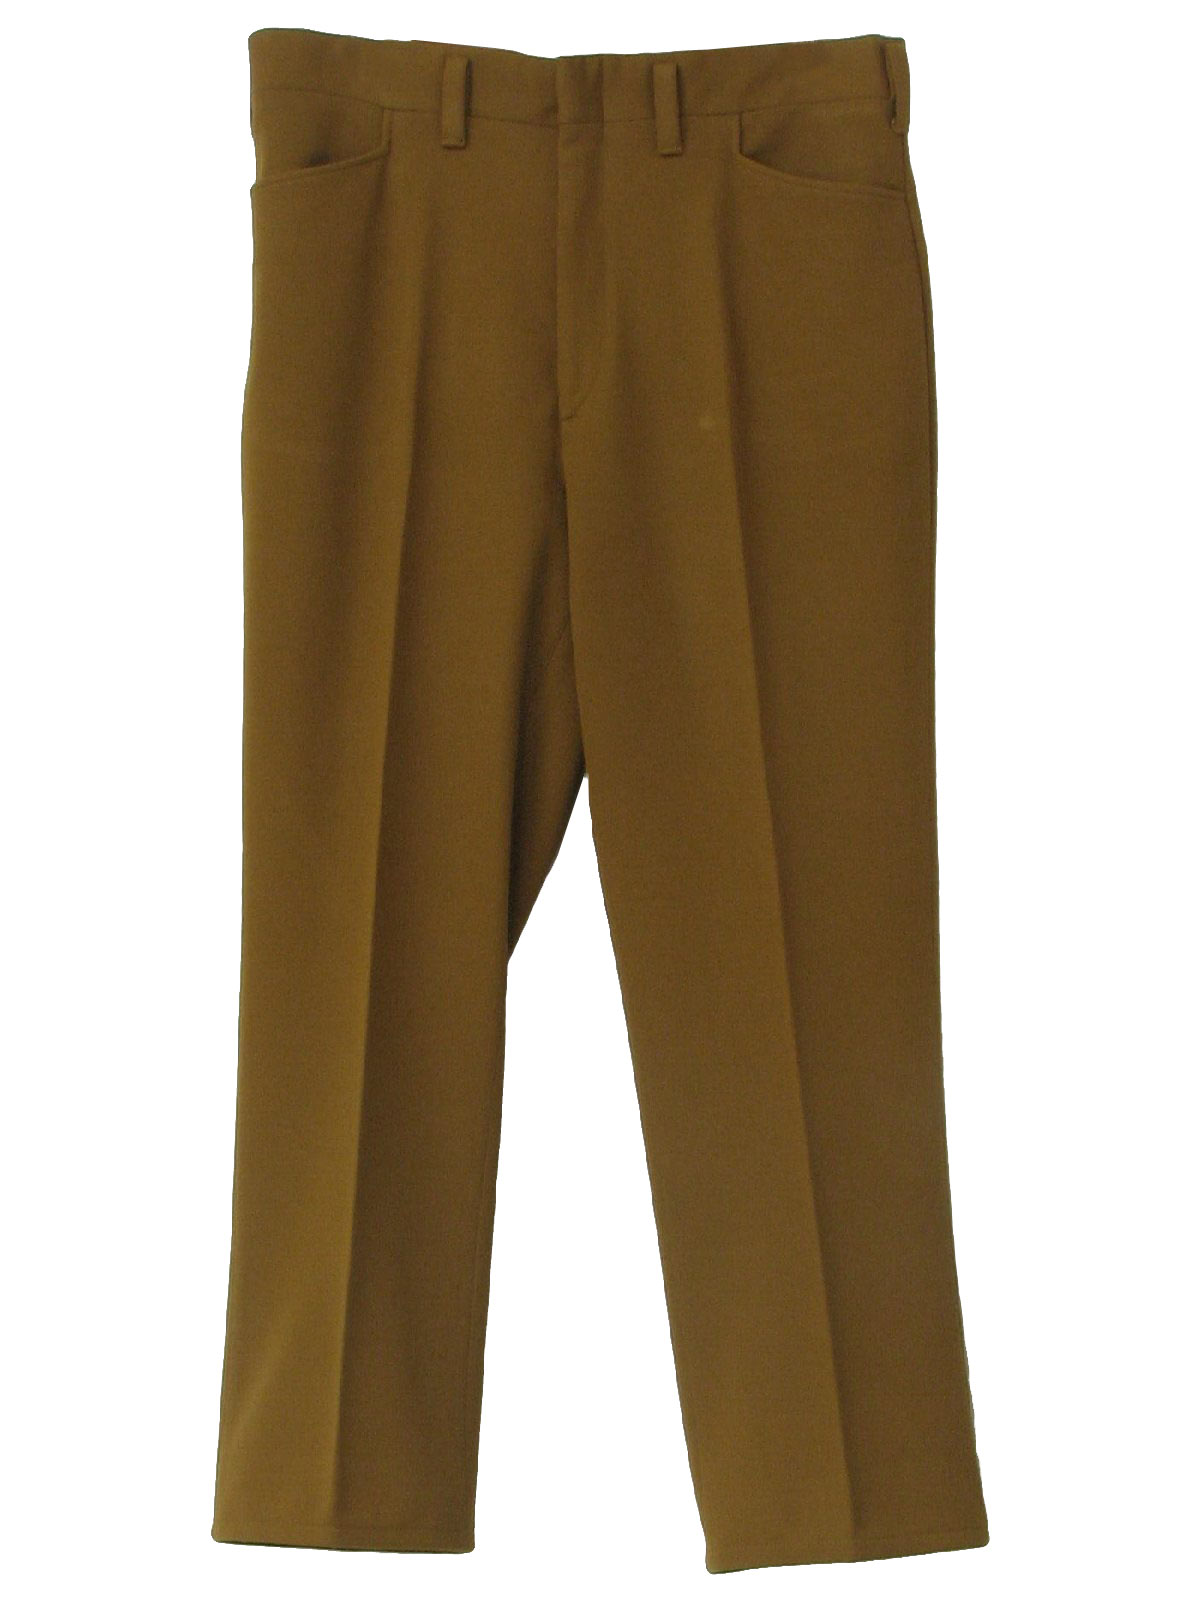 Vintage Days Slacks 70's Pants: 70s -Days Slacks- Sandy golden brown ...